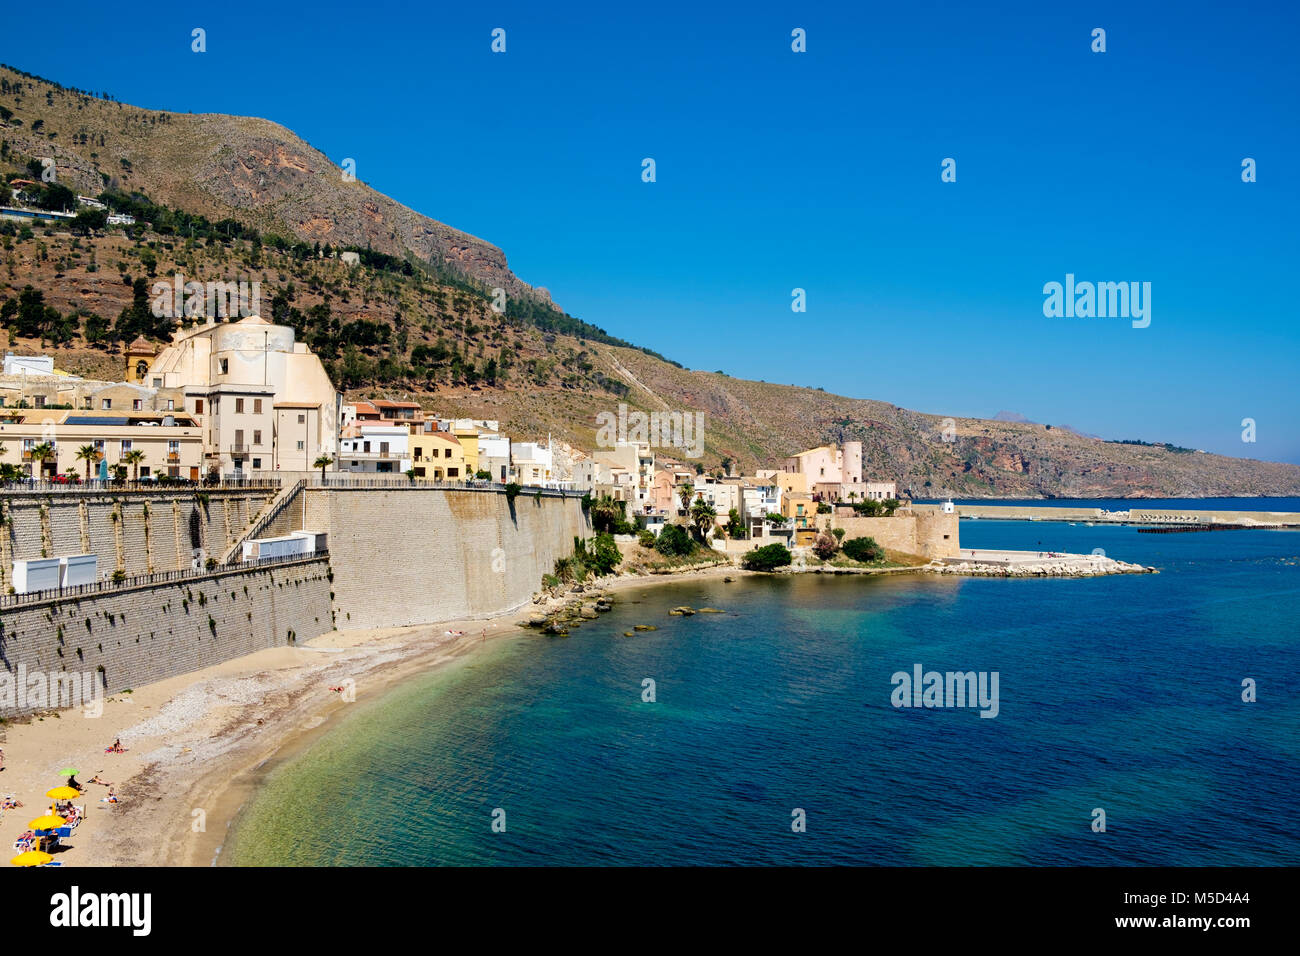 Vieille ville, Castellammare del Golfo, province de Trapani, Sicile, Italie Banque D'Images